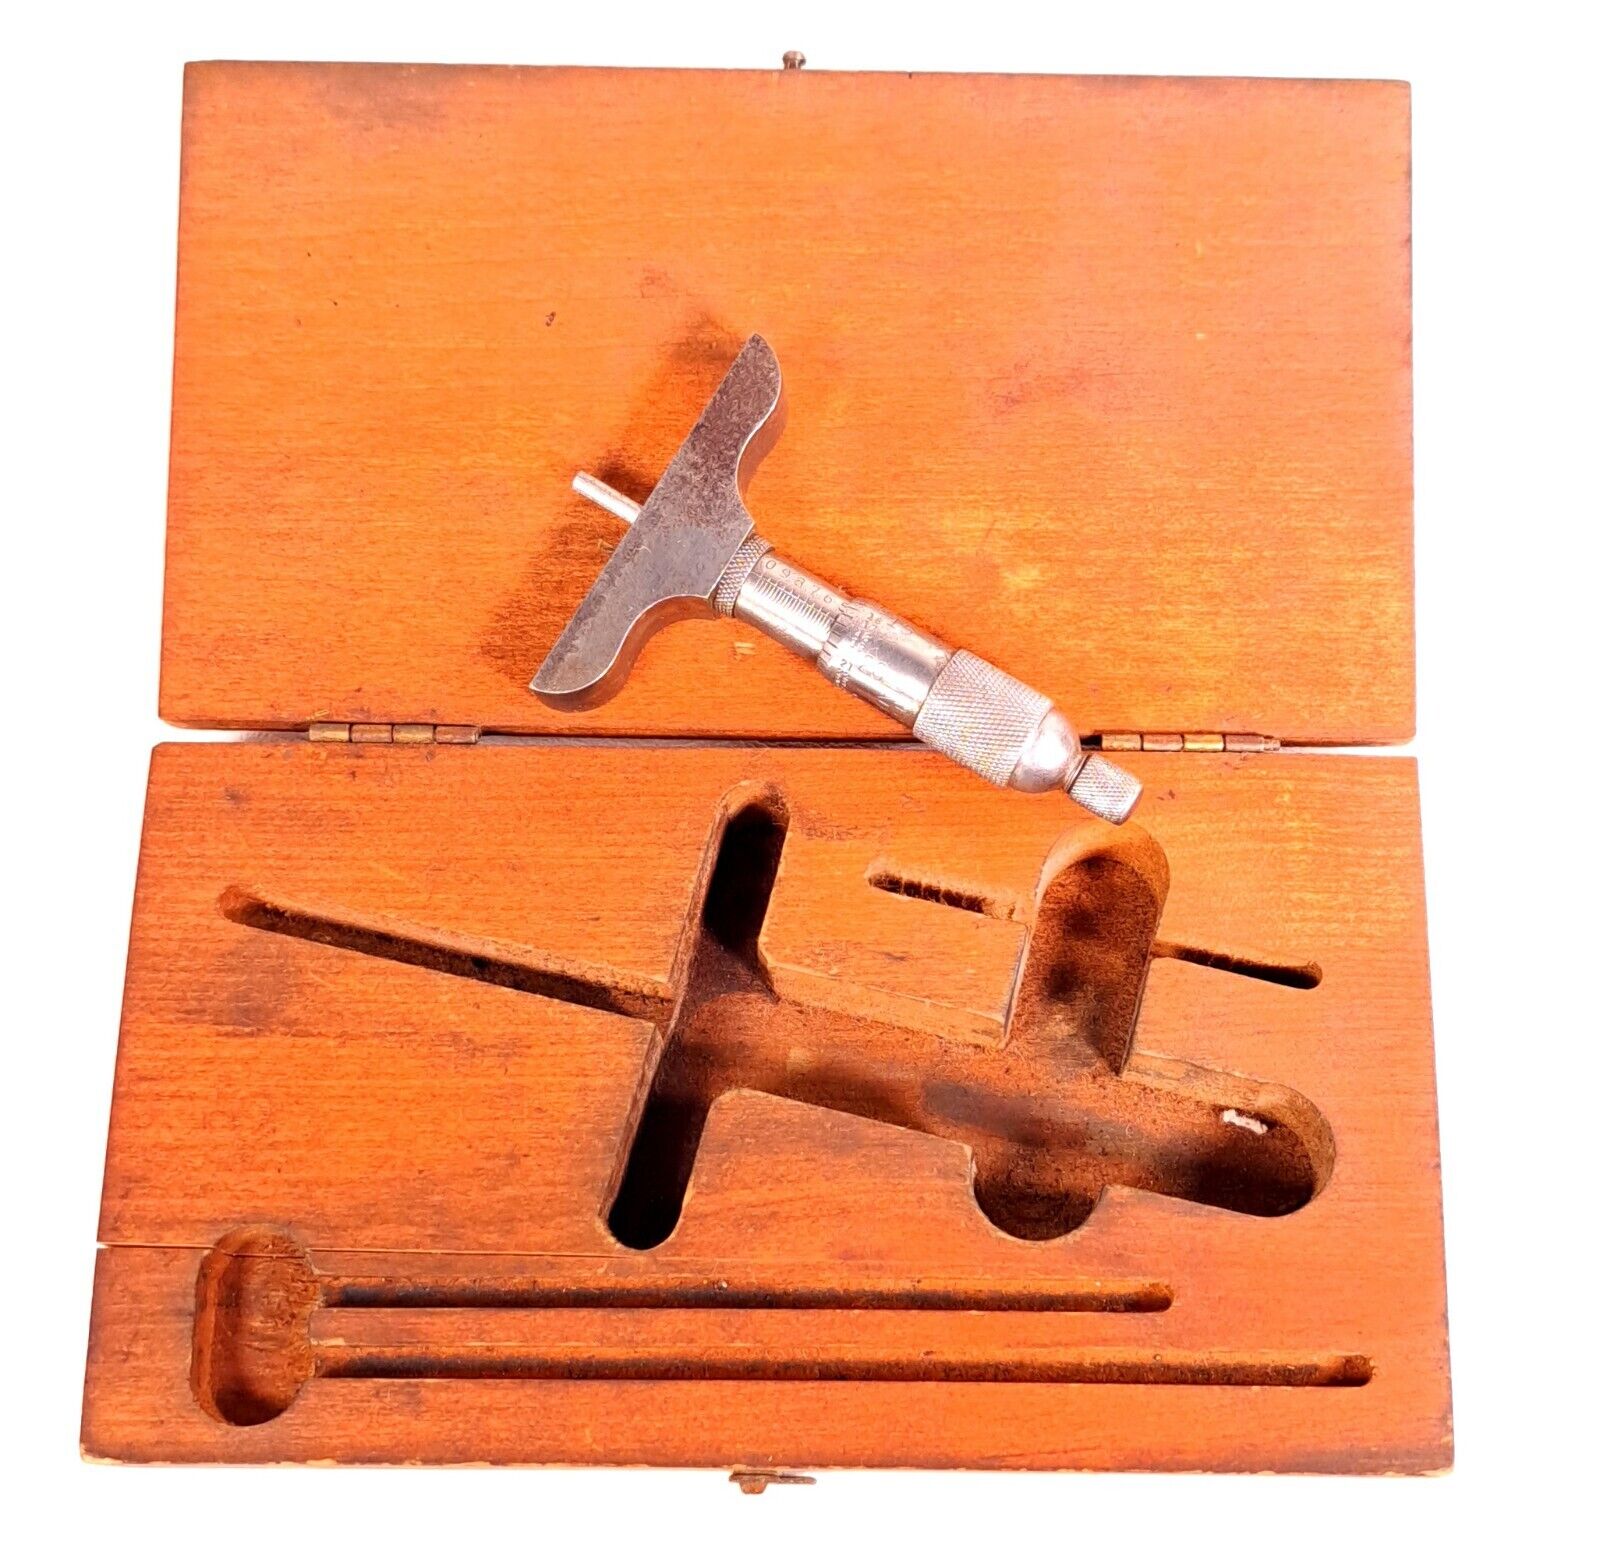 VTG Starrett replacement wooden case old font Craftsman depth gauge micrometer